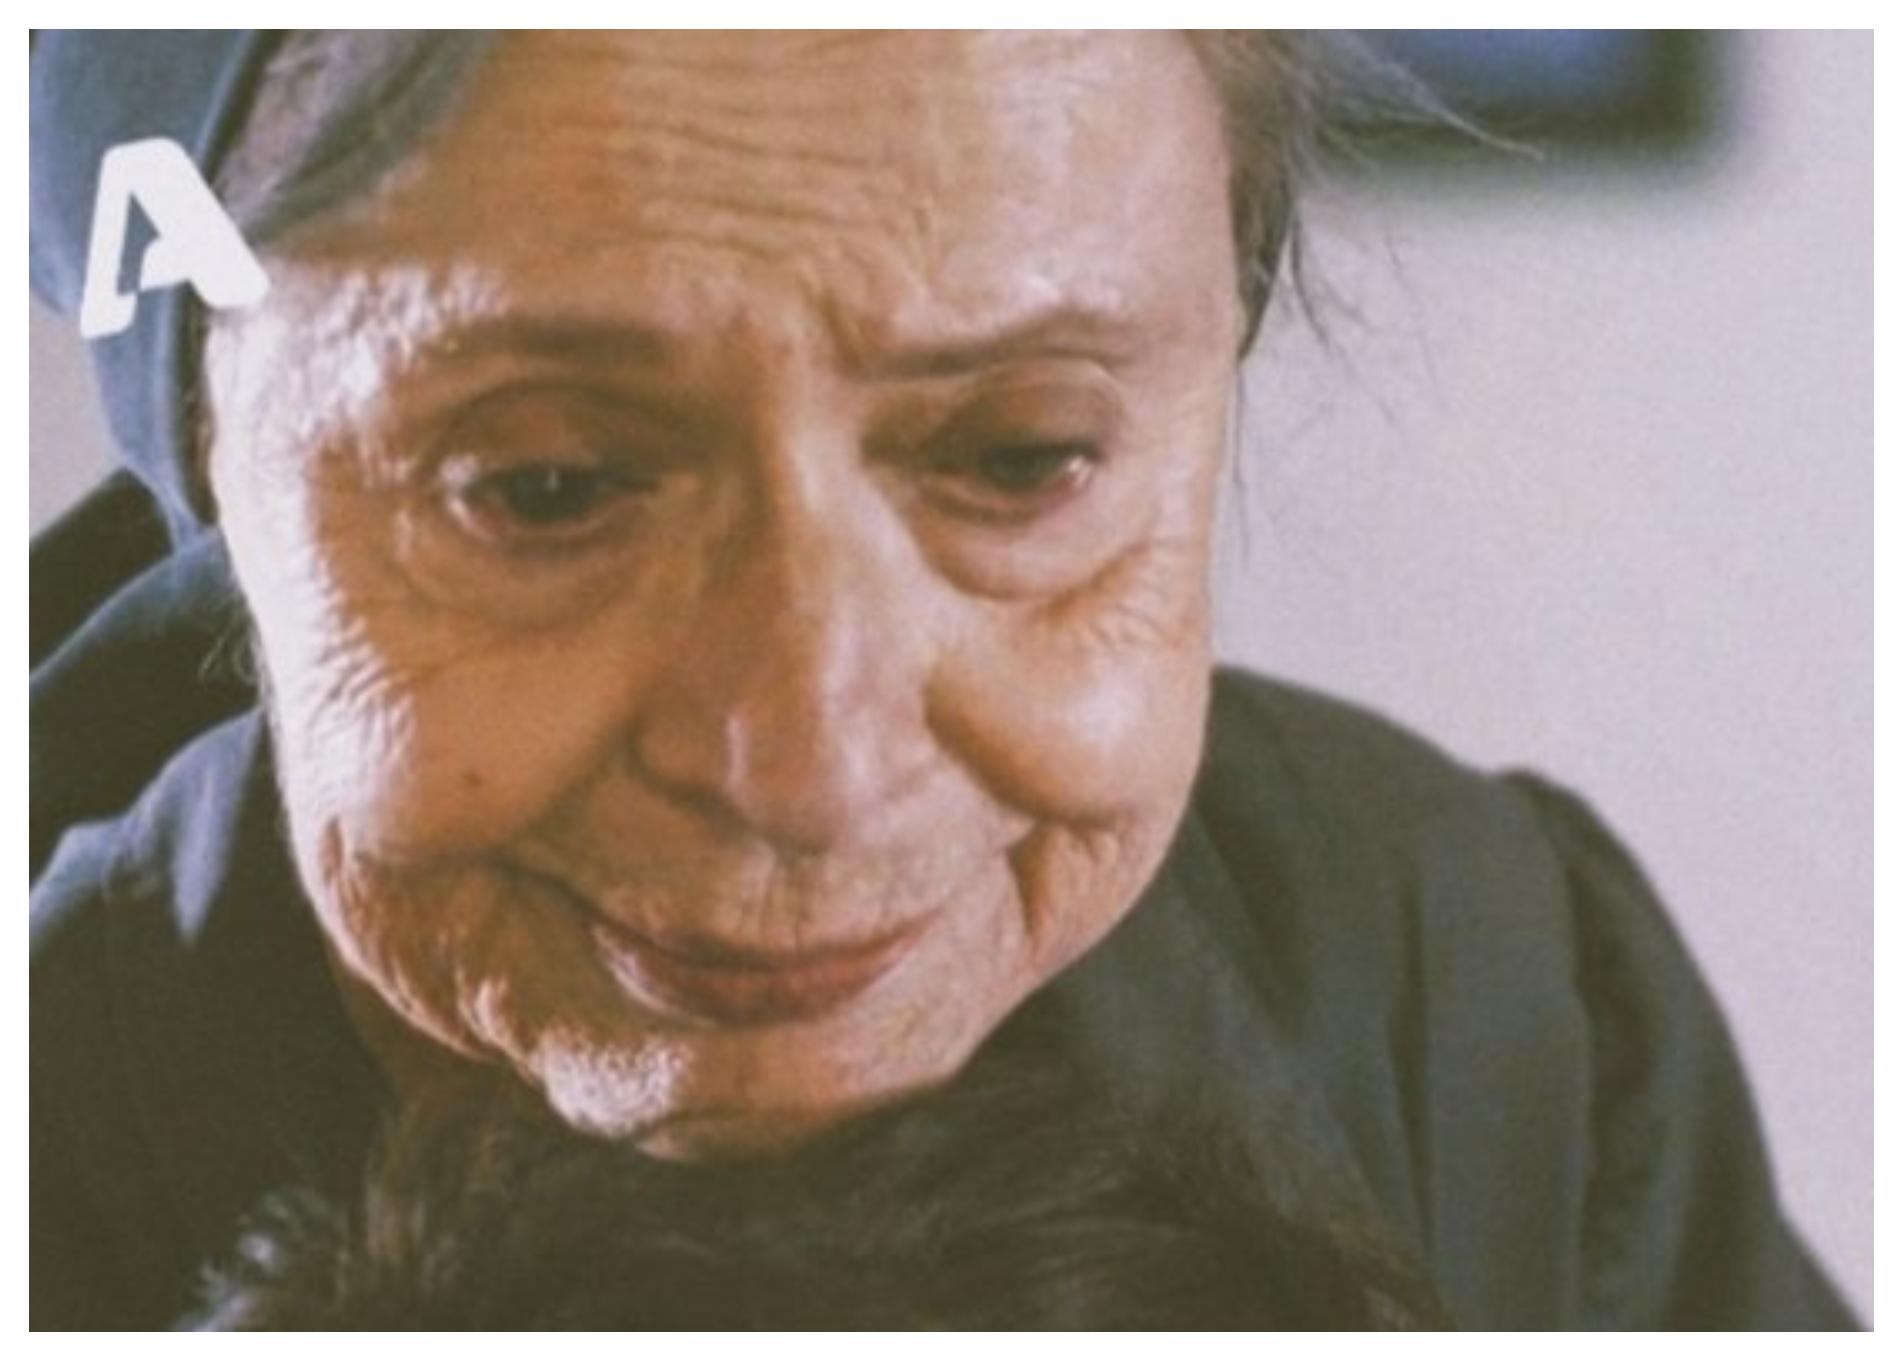 Σασμός: Η γιαγιά Ειρήνη κρεμάζεται και αυτοκτονεί σε μια σκηνή που θα καθηλώσει